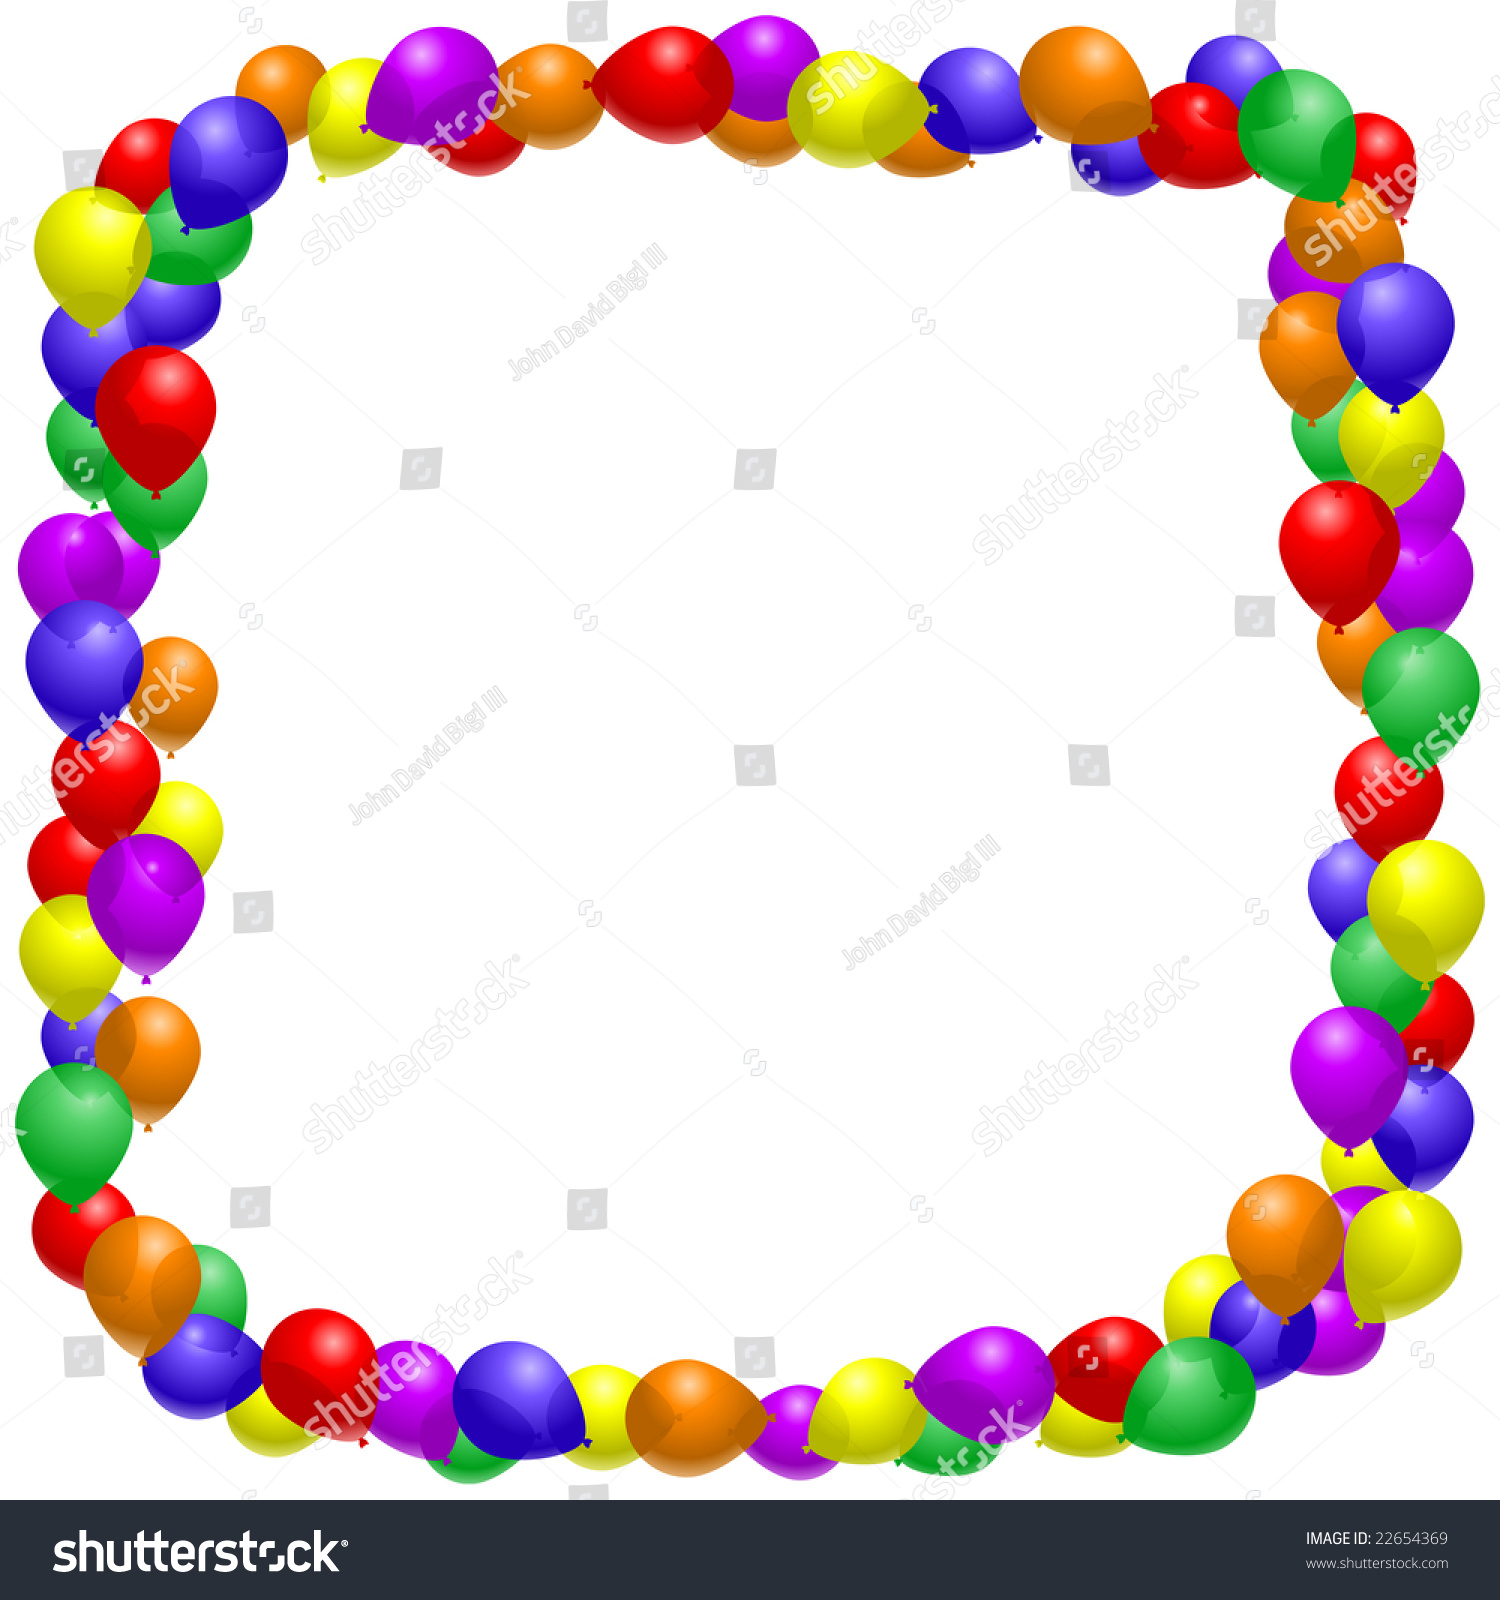 Balloon Border Stock Illustration 22654369 - Shutterstock